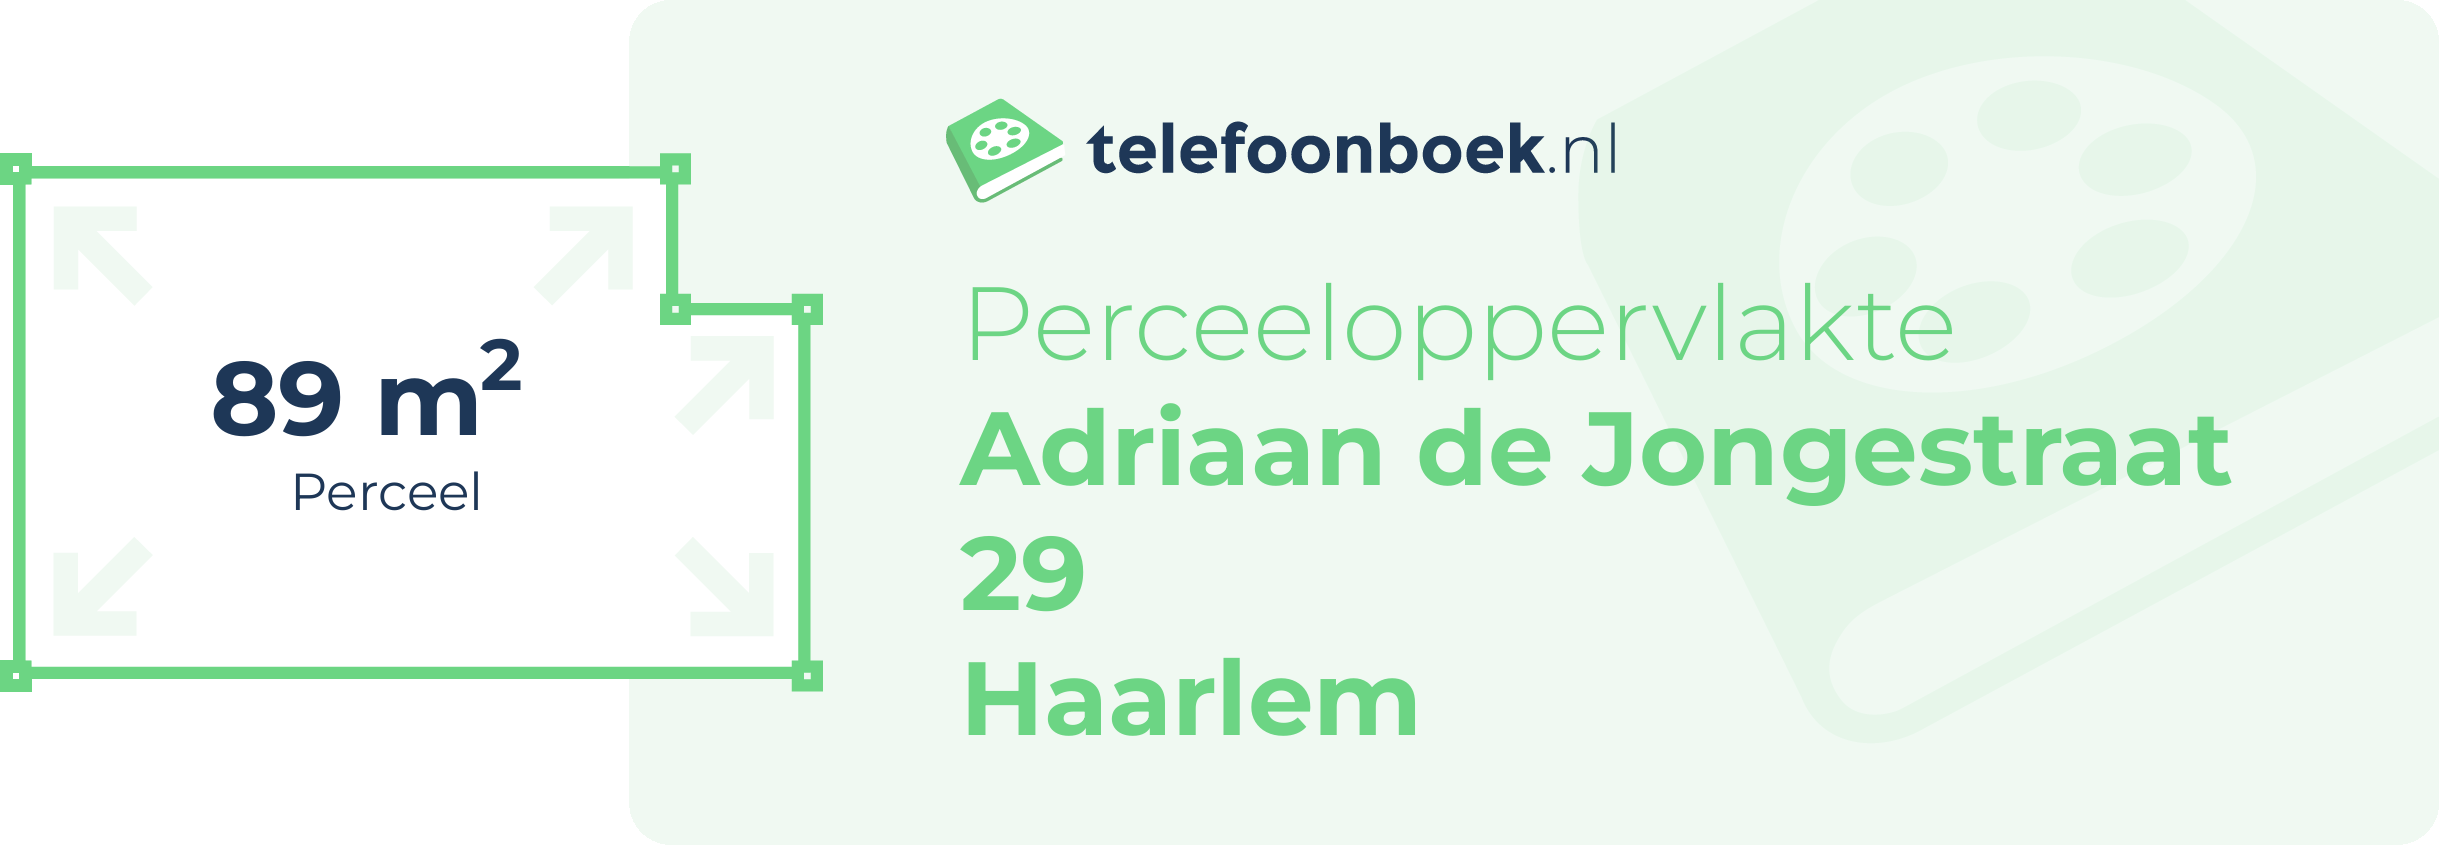 Perceeloppervlakte Adriaan De Jongestraat 29 Haarlem